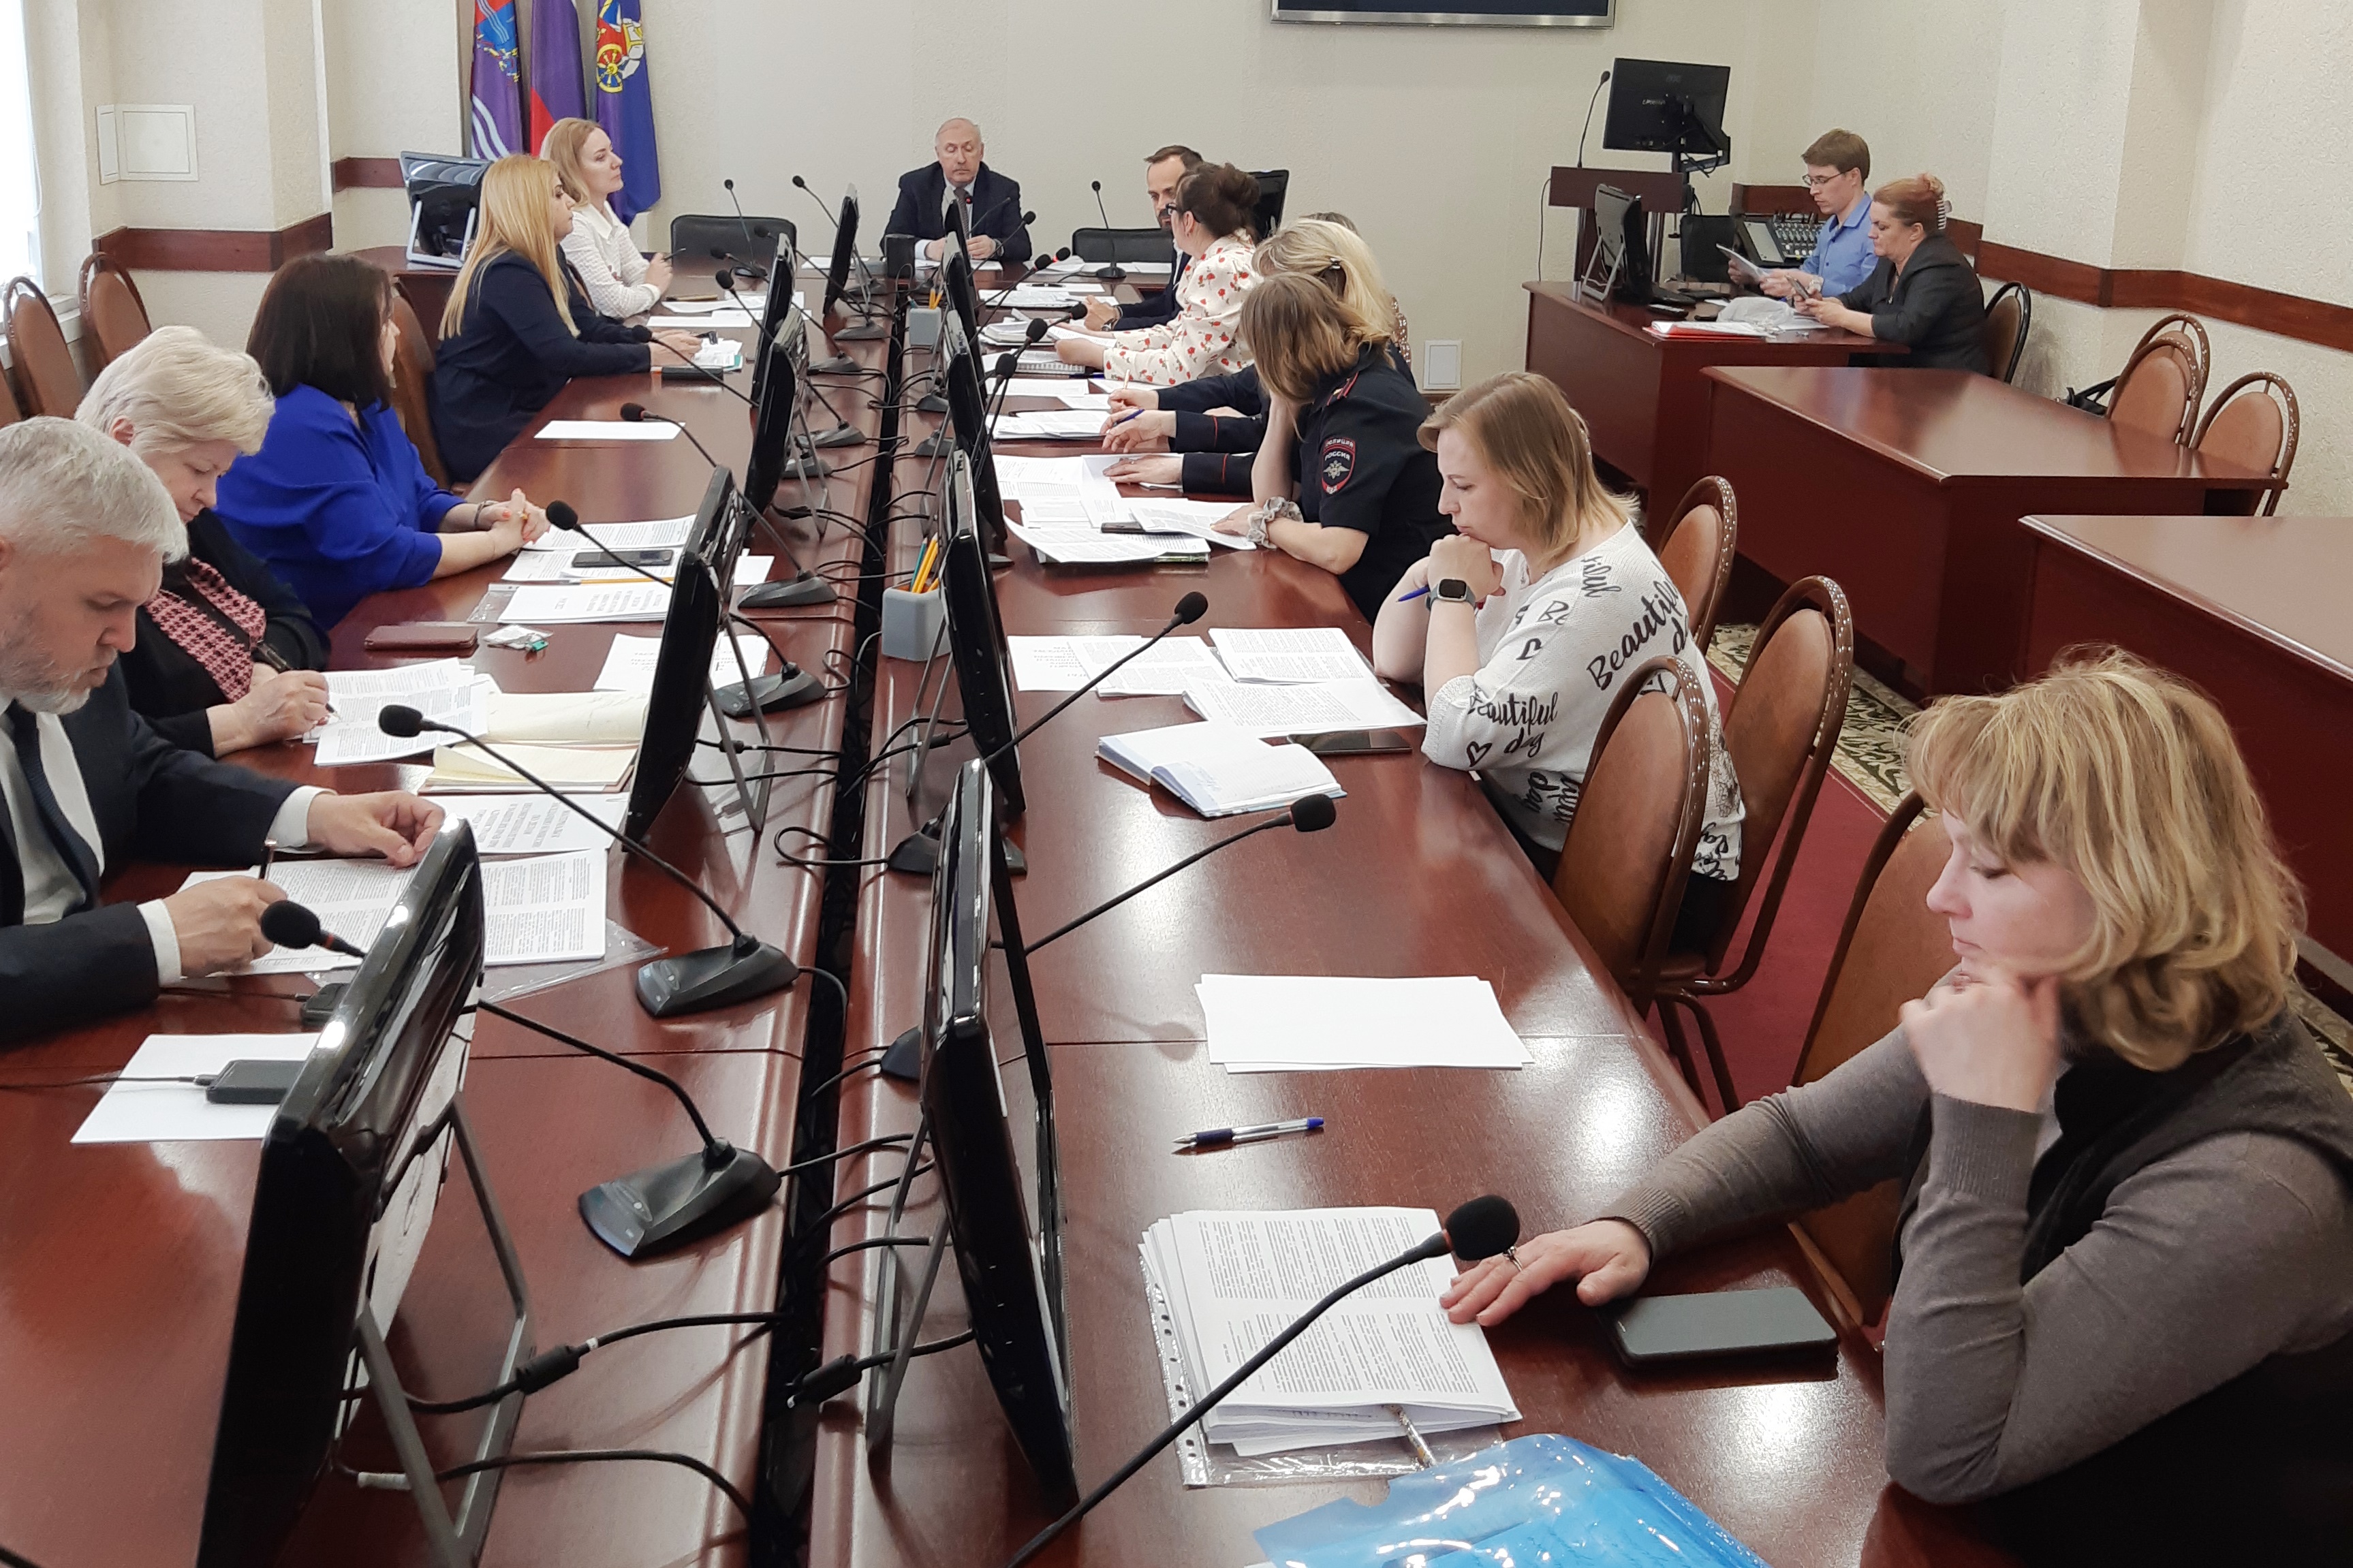 В мэрии прошло заседание комиссии по делам несовершеннолетних и защите их прав по Фрунзенскому району города Иванова.